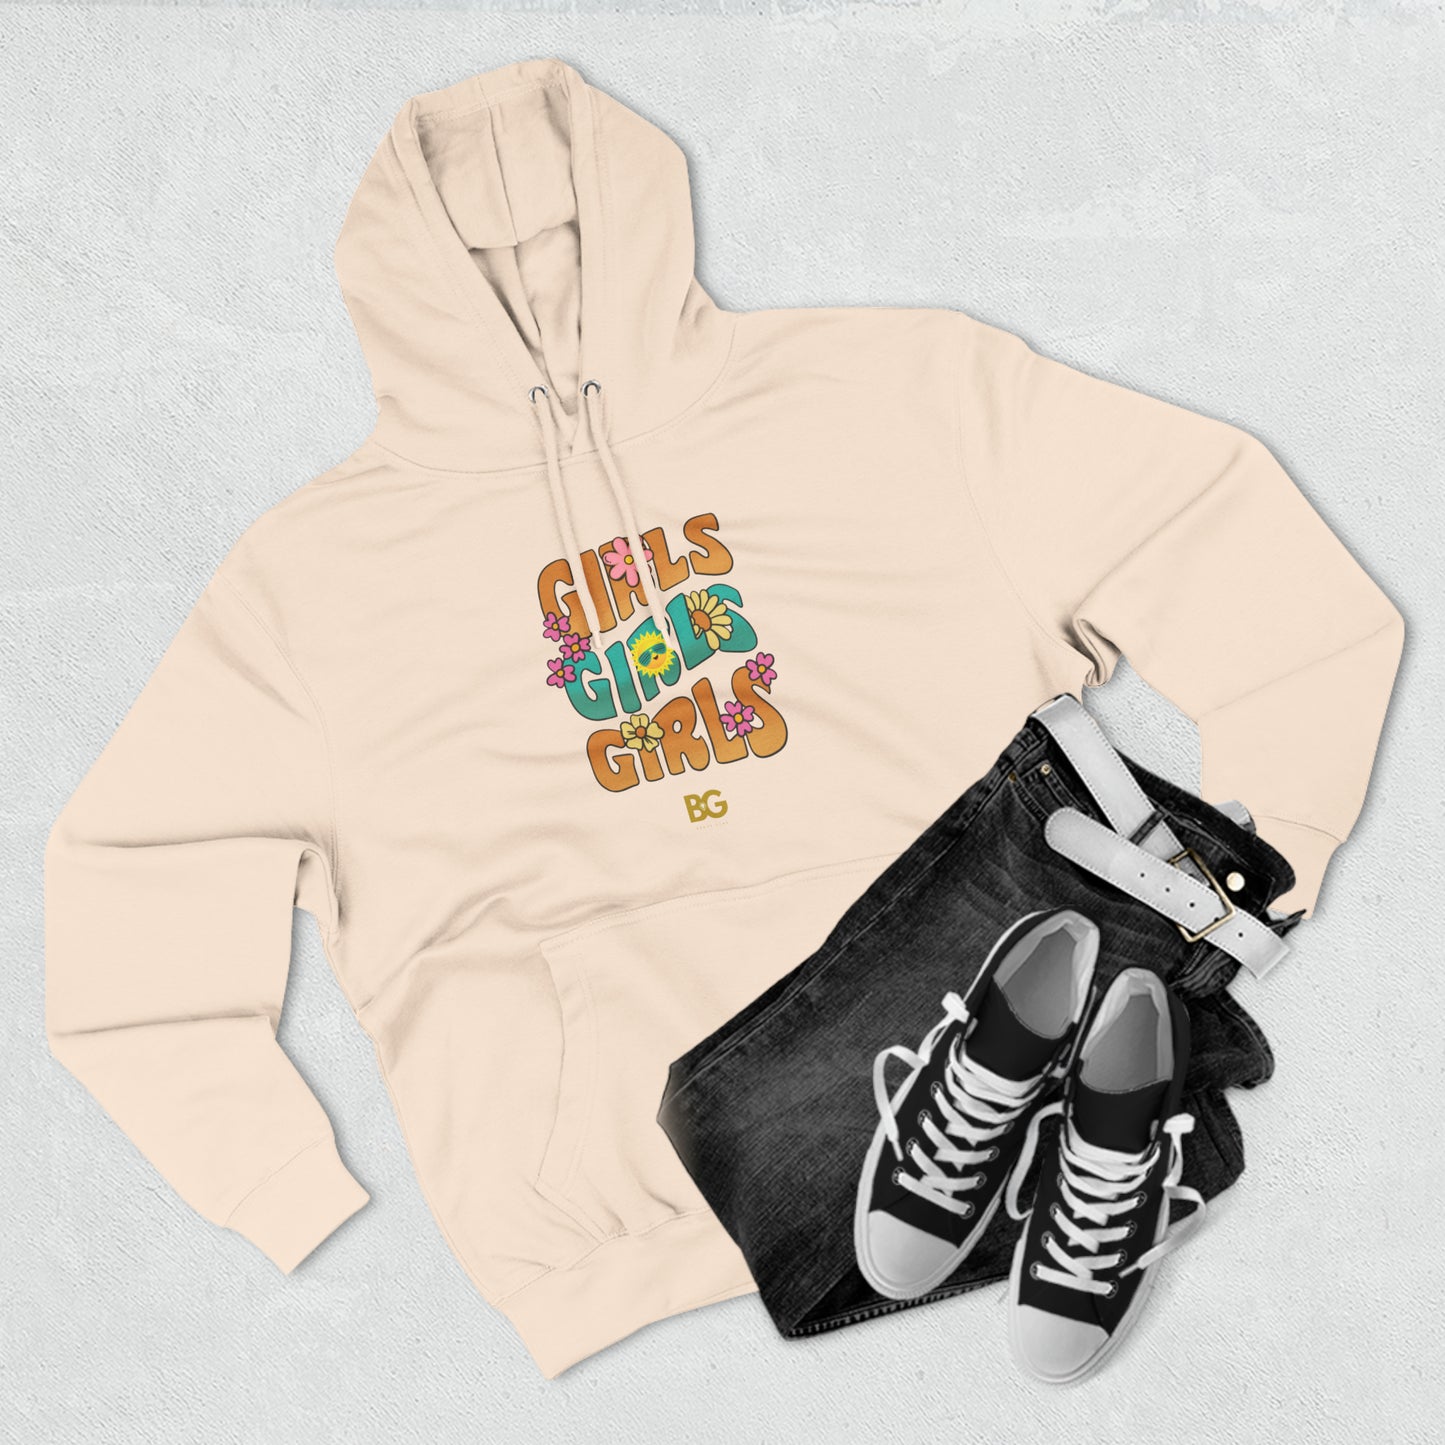 BG "Girls Girls Girls" Premium Pullover Hoodie